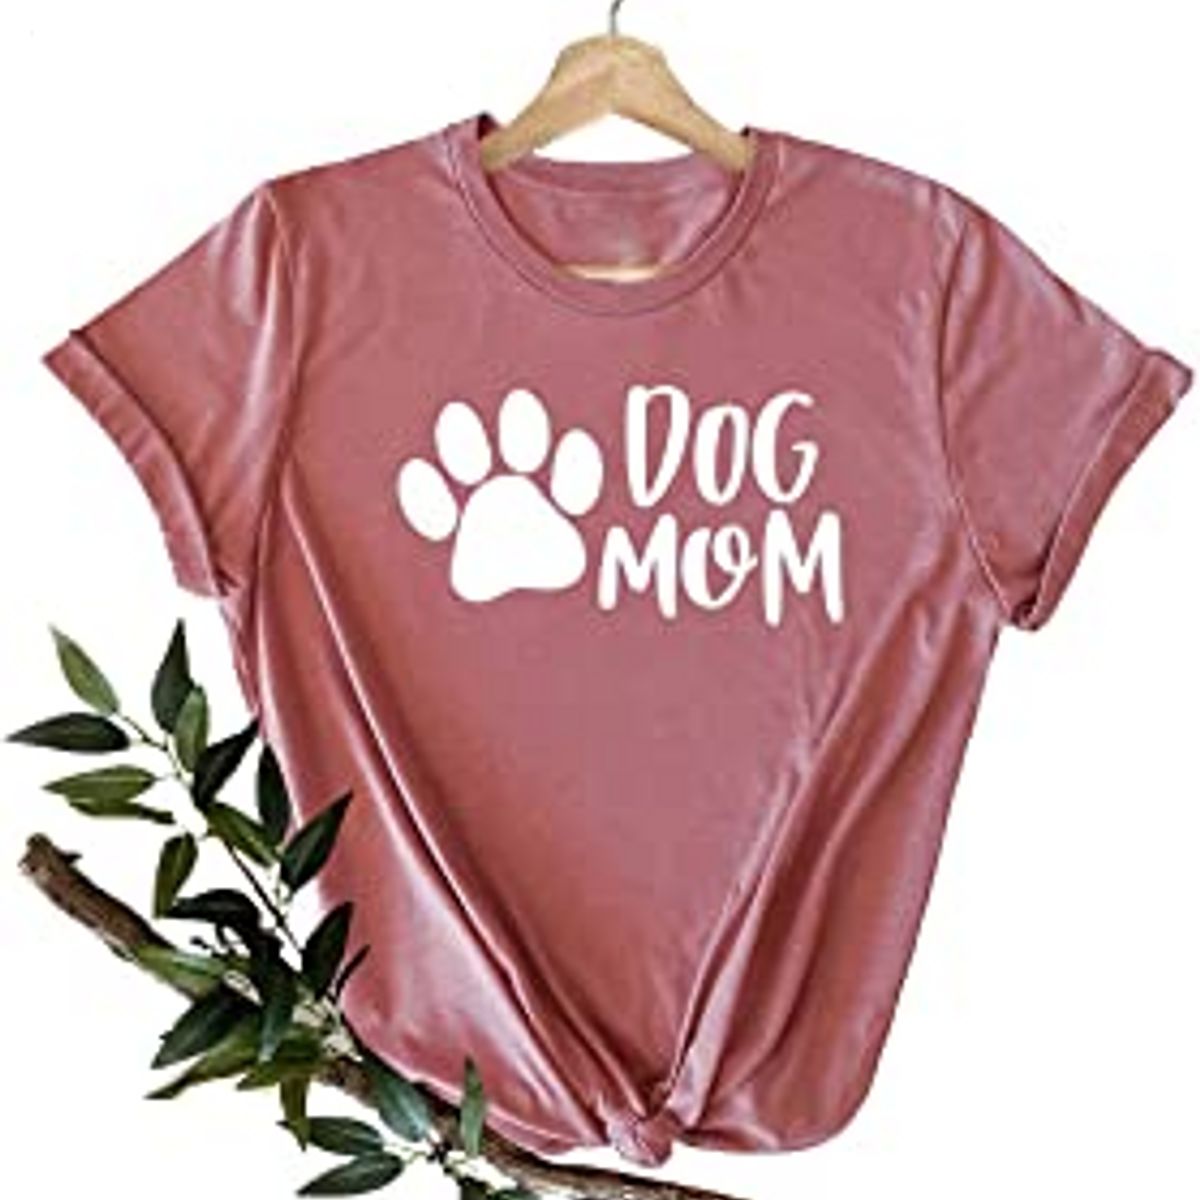 FastDeliveryTees Dog Mama T Shirt – Dog Mom T Shirt, Fur Mama Tshirt, Mothers Day Shirt, Dog Mom Shirt, Cute Dog Mother Tee, Dog Lover T-Shirt, Pet Owner Shirt, Dog Mom Gift